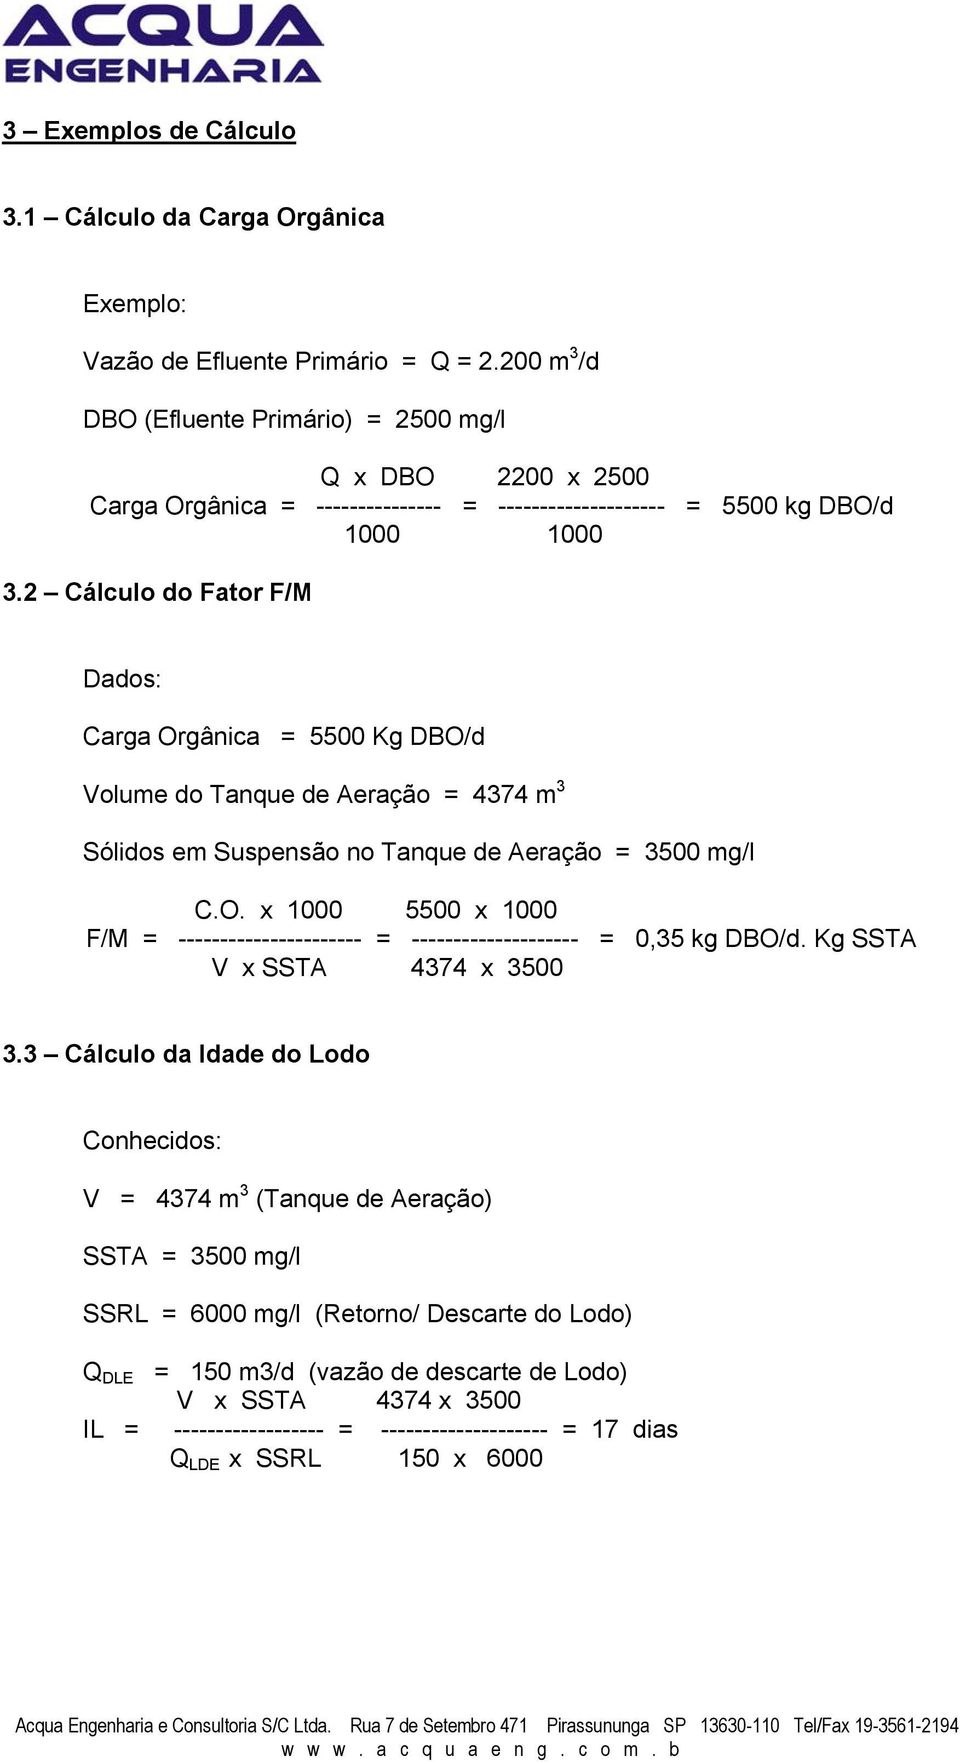 2 Cálculo do Fator F/M Dados: Carga Orgânica = 5500 Kg DBO/d Volume do Tanque de Aeração = 4374 m 3 Sólidos em Suspensão no Tanque de Aeração = 3500 mg/l C.O. x 1000 5500 x 1000 F/M = ---------------------- = -------------------- = 0,35 kg DBO/d.